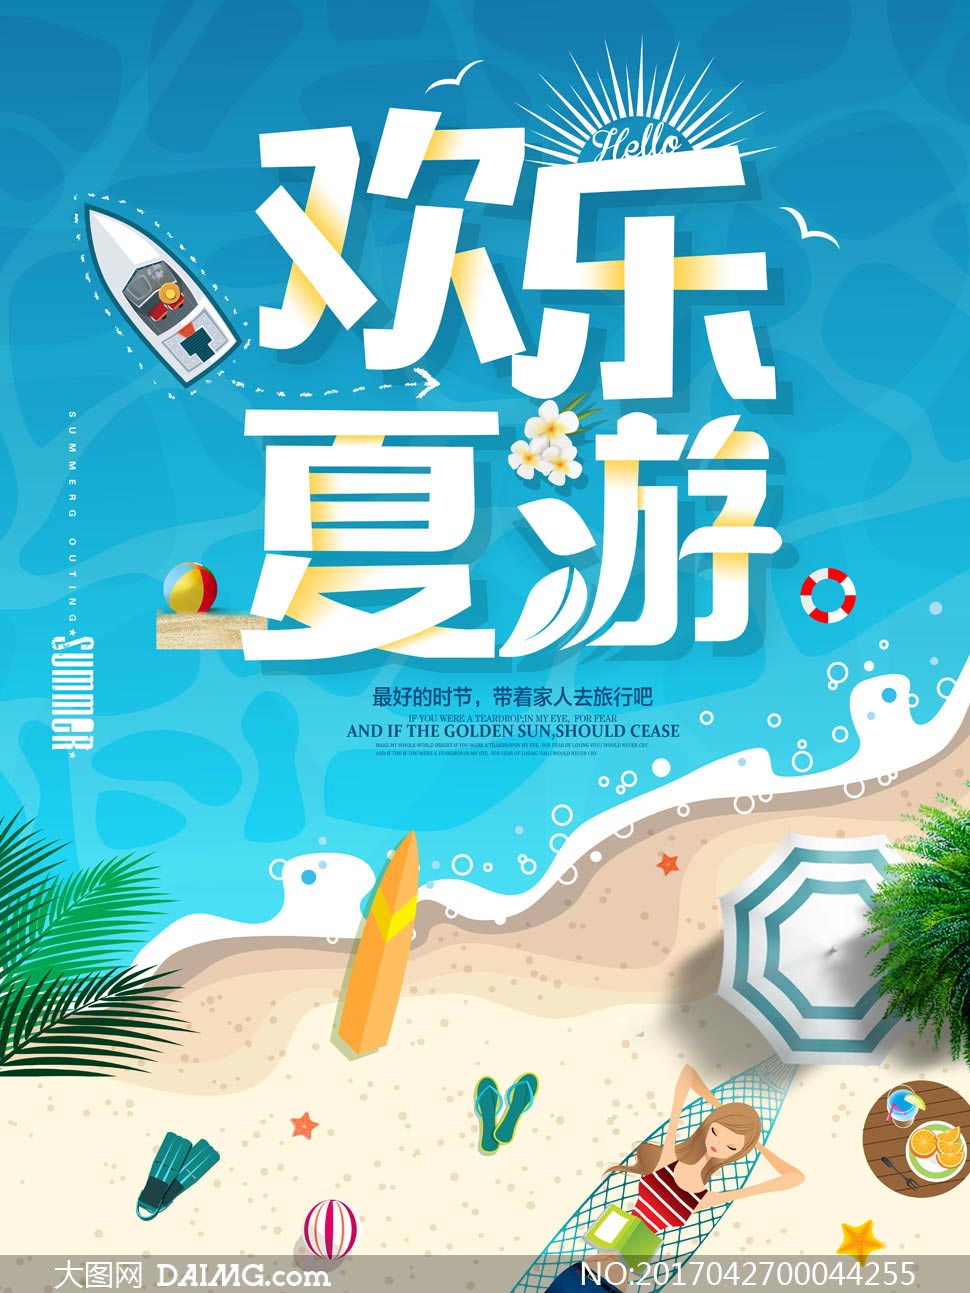 夏季旅游活动海报设计psd源文件